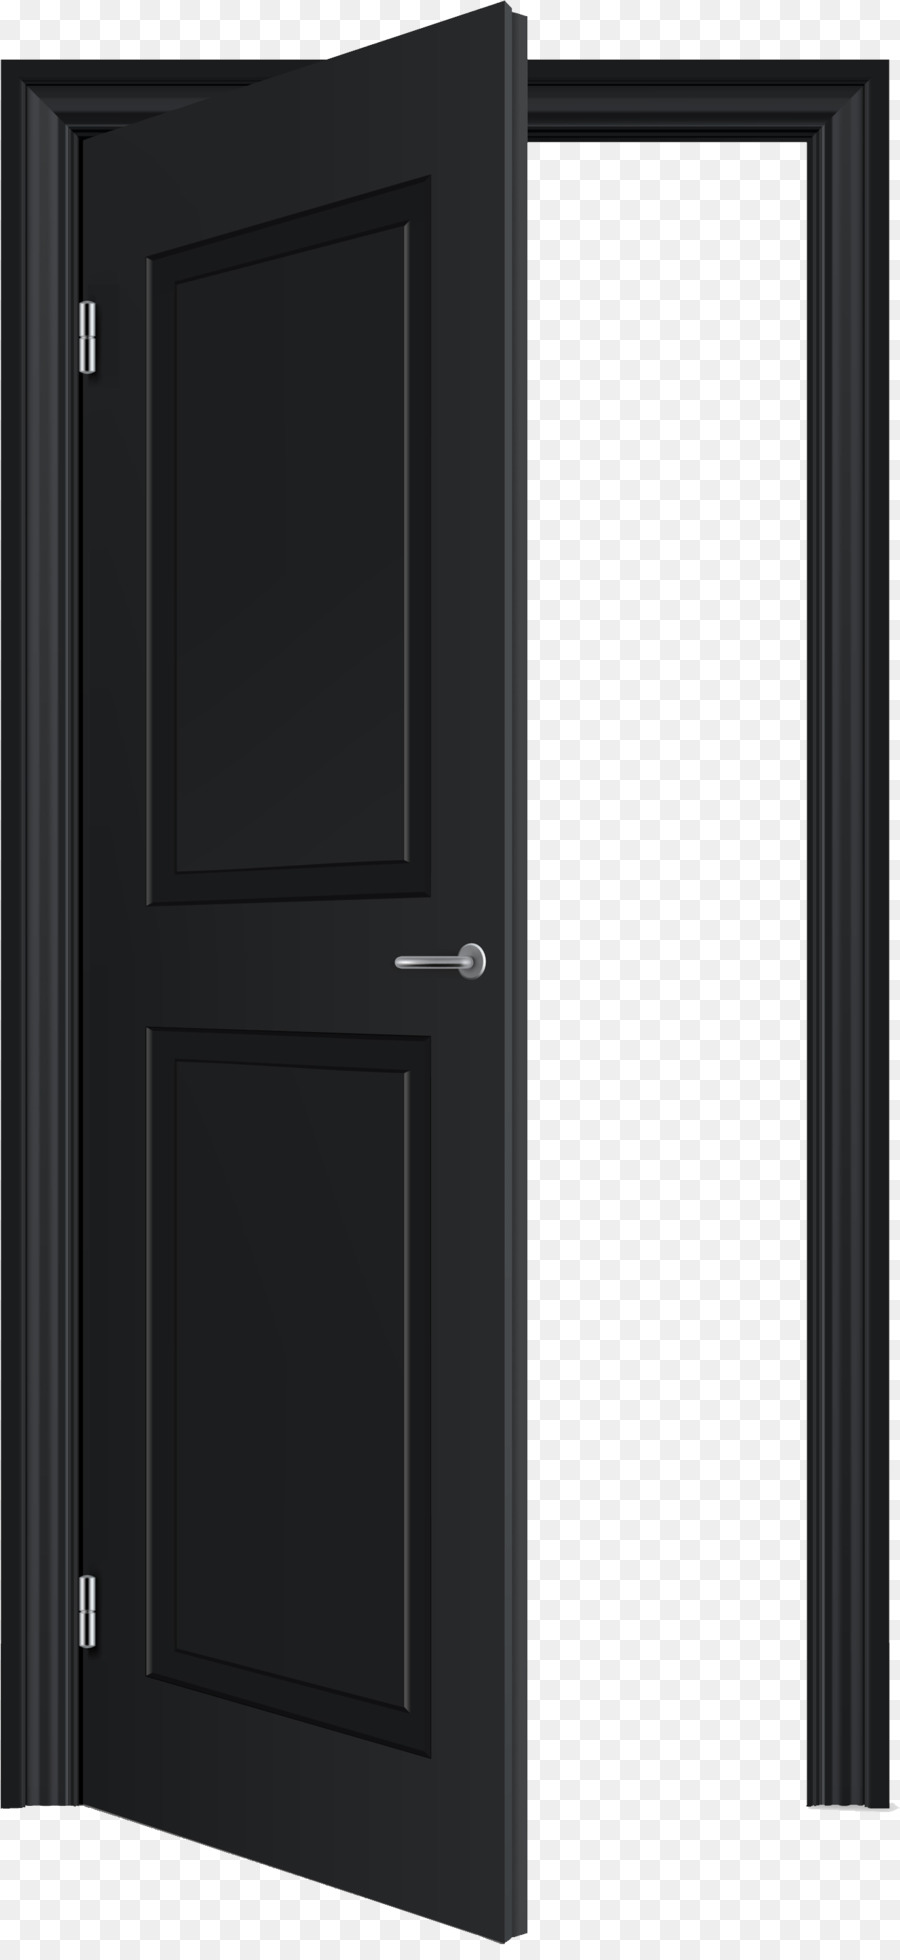 Serratura di porta del Computer, Icone clipart - porta